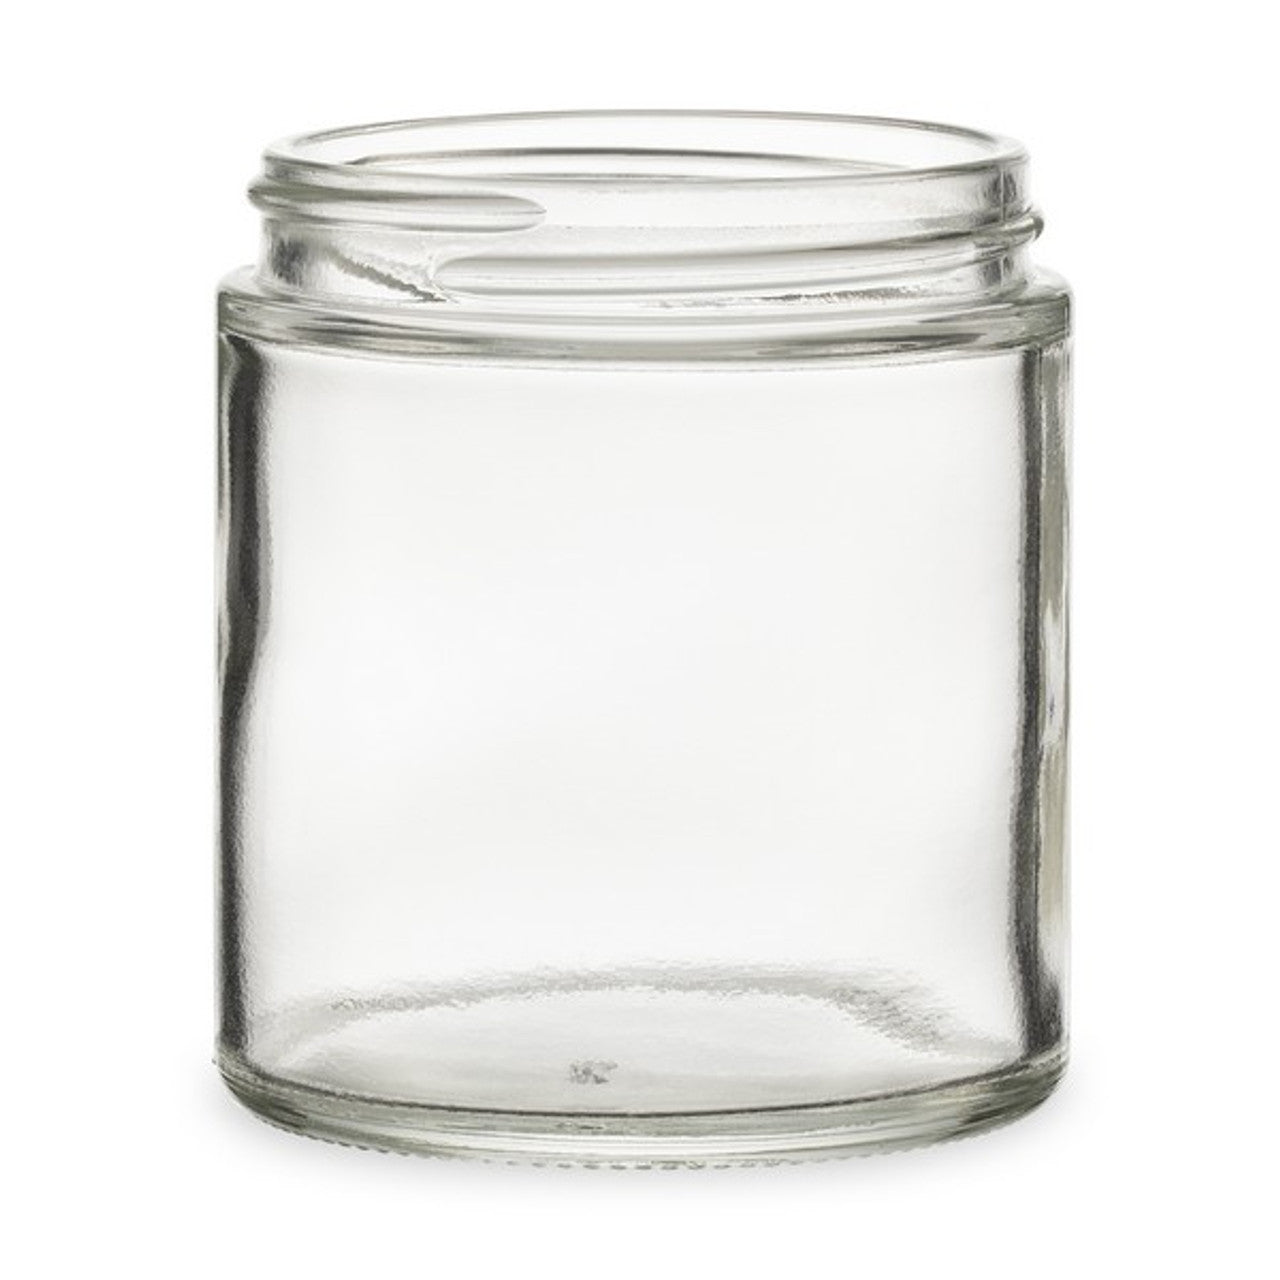 4oz straight sided glass jar